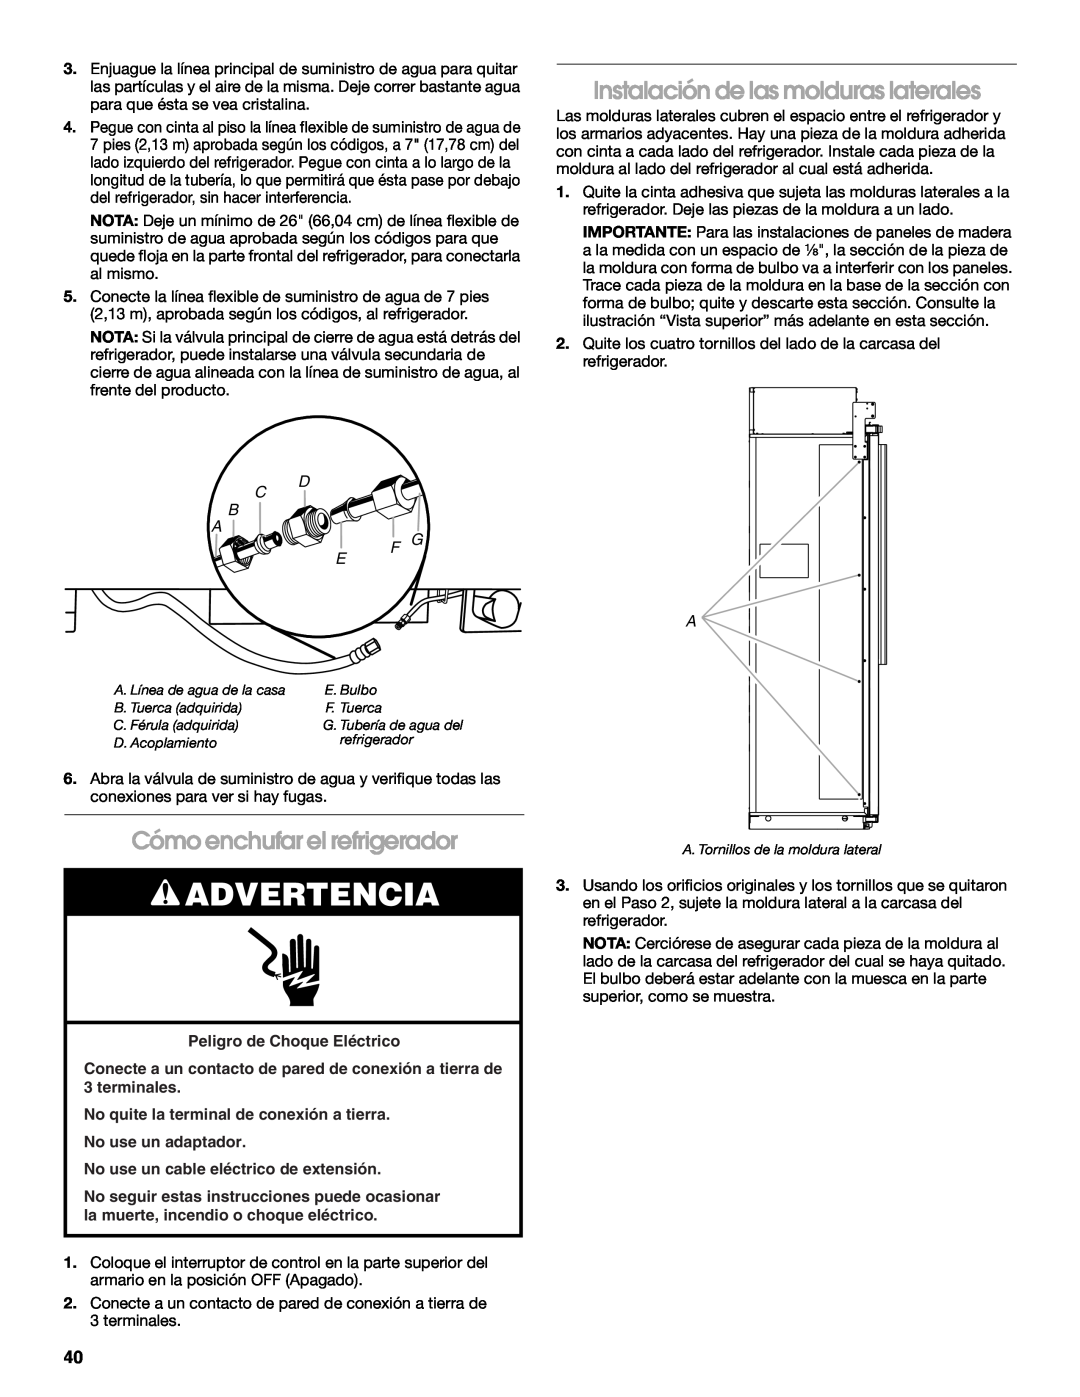 Jenn-Air W10379136B manual Instalación de las molduras laterales, Cómo enchufar el refrigerador, Advertencia, C B A 